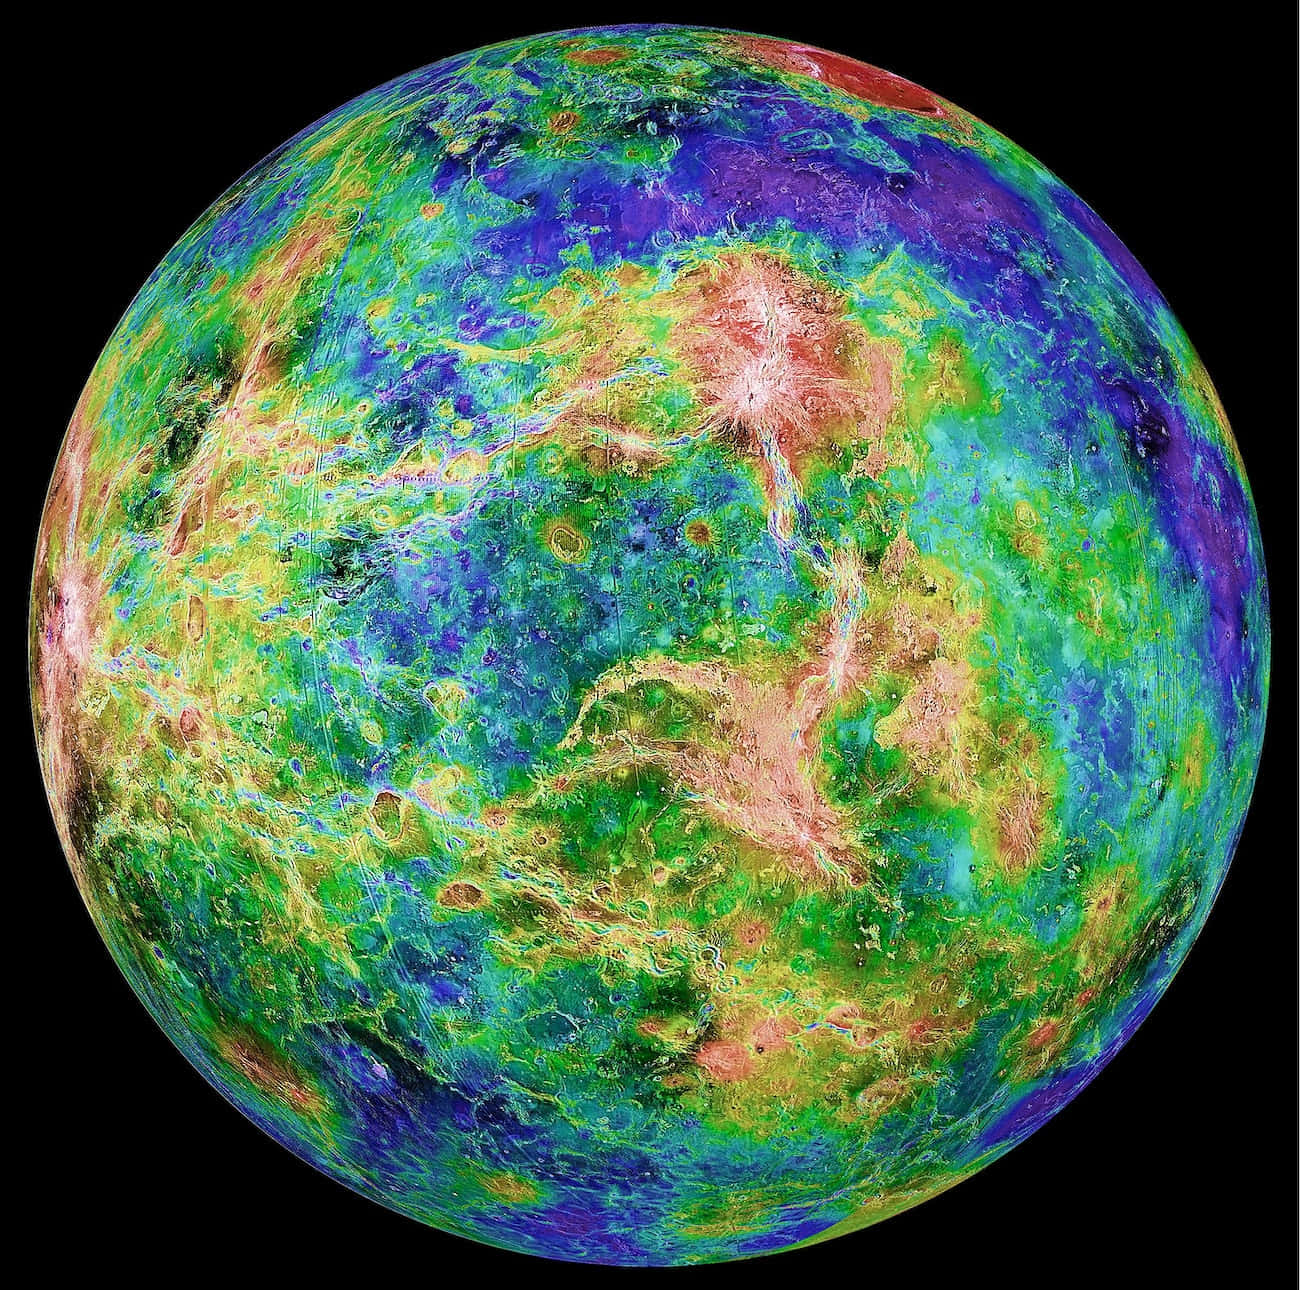 Unbrillante Semicírculo Resplandeciendo En El Cielo Nocturno - Venus